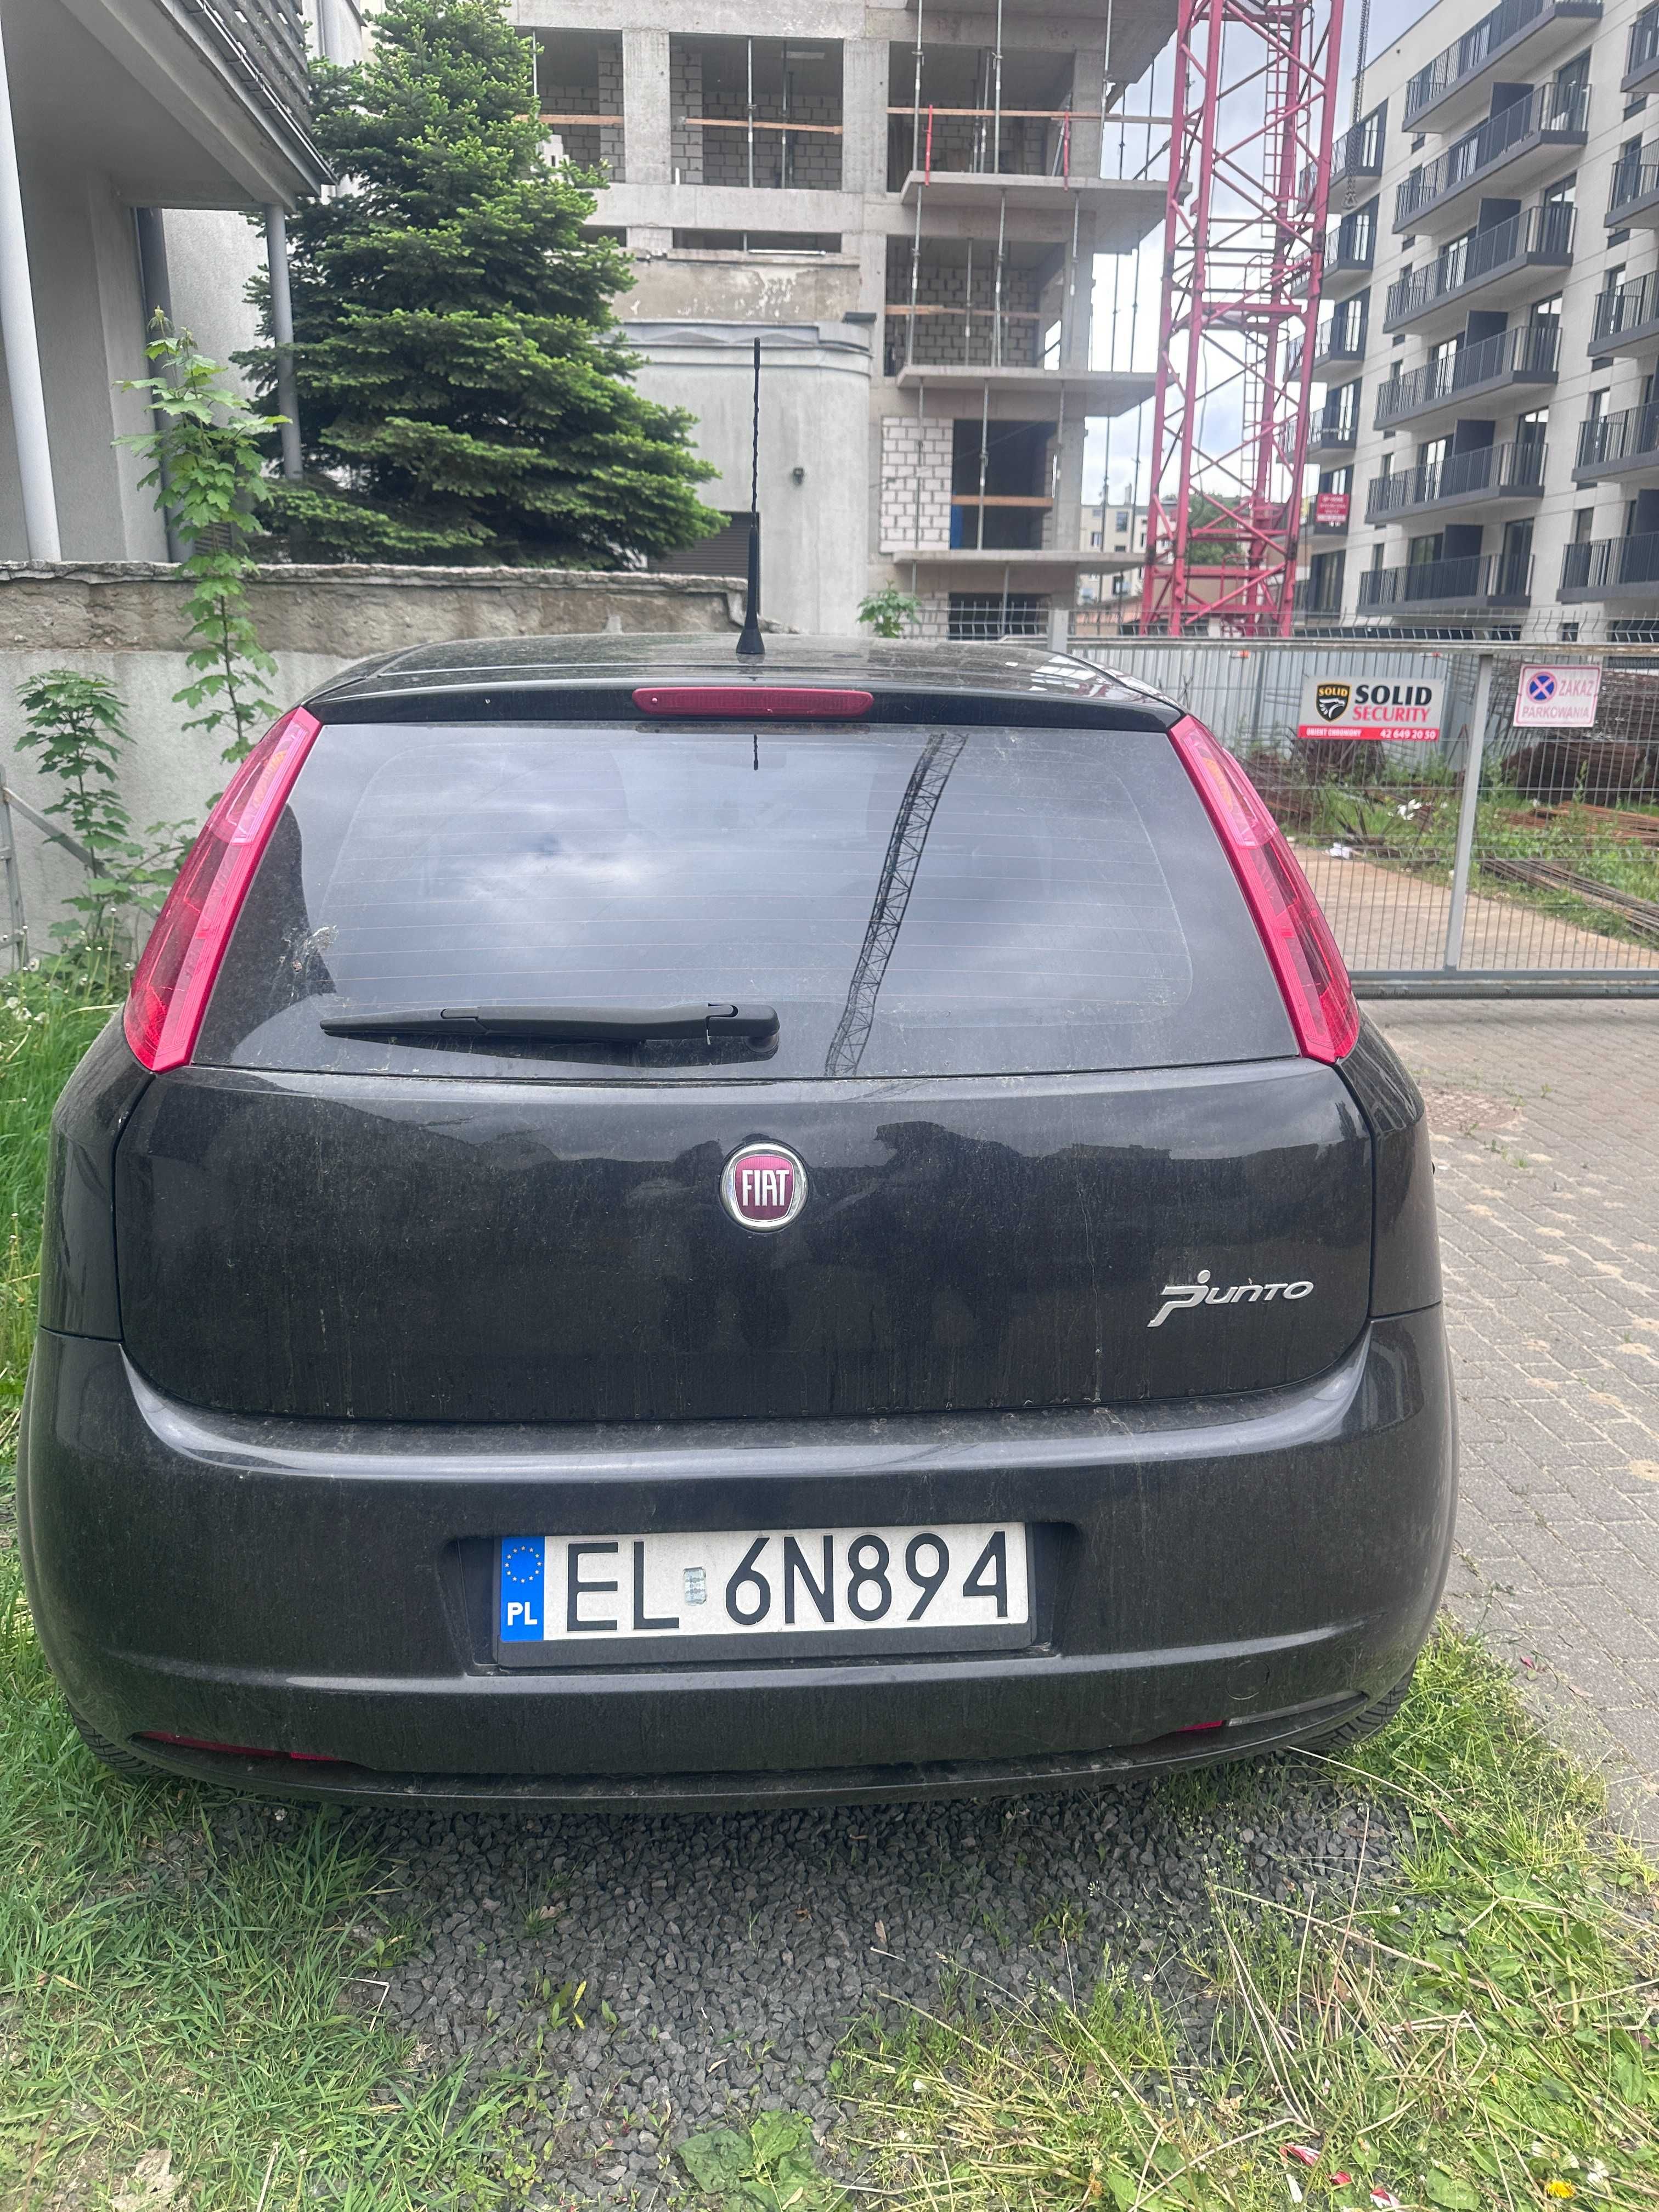 Syndyk sprzeda samochód Fiat Punto - Łódź